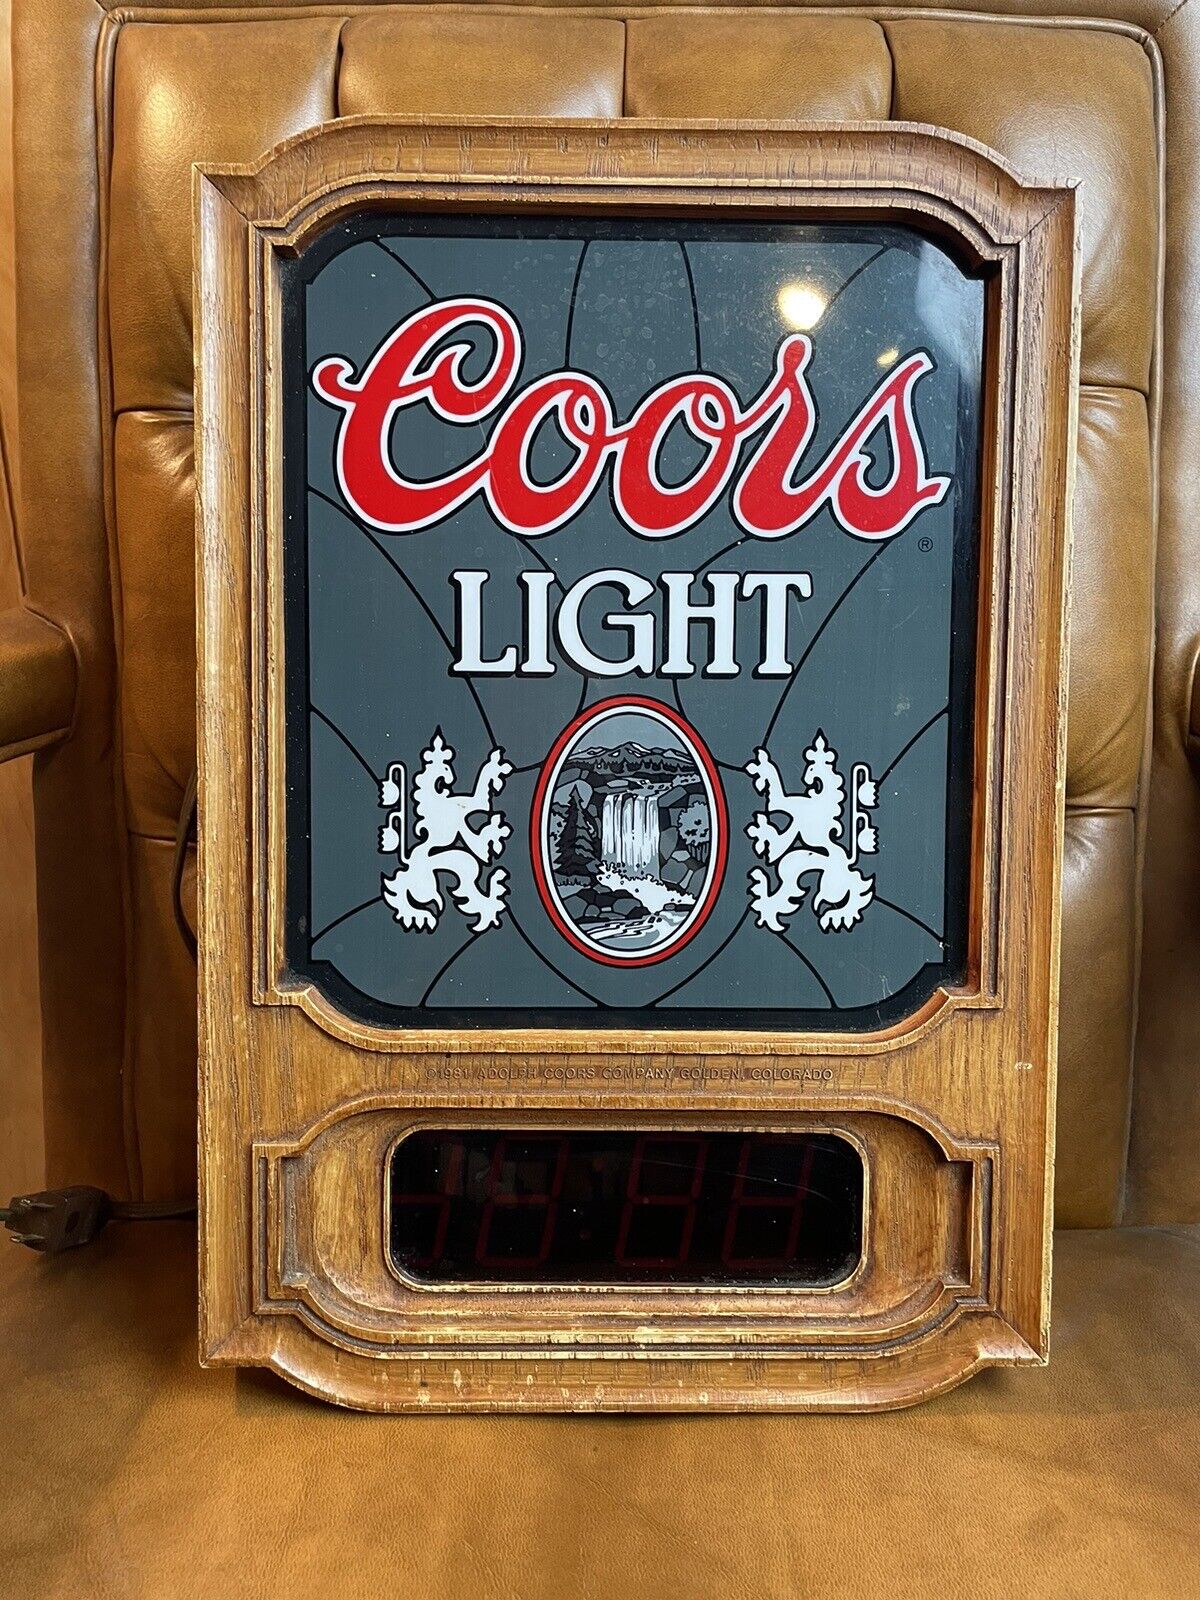 Coors Light Vintage 1981 Clock Sign Light w/ Digital Clock Man Cave Bar Works